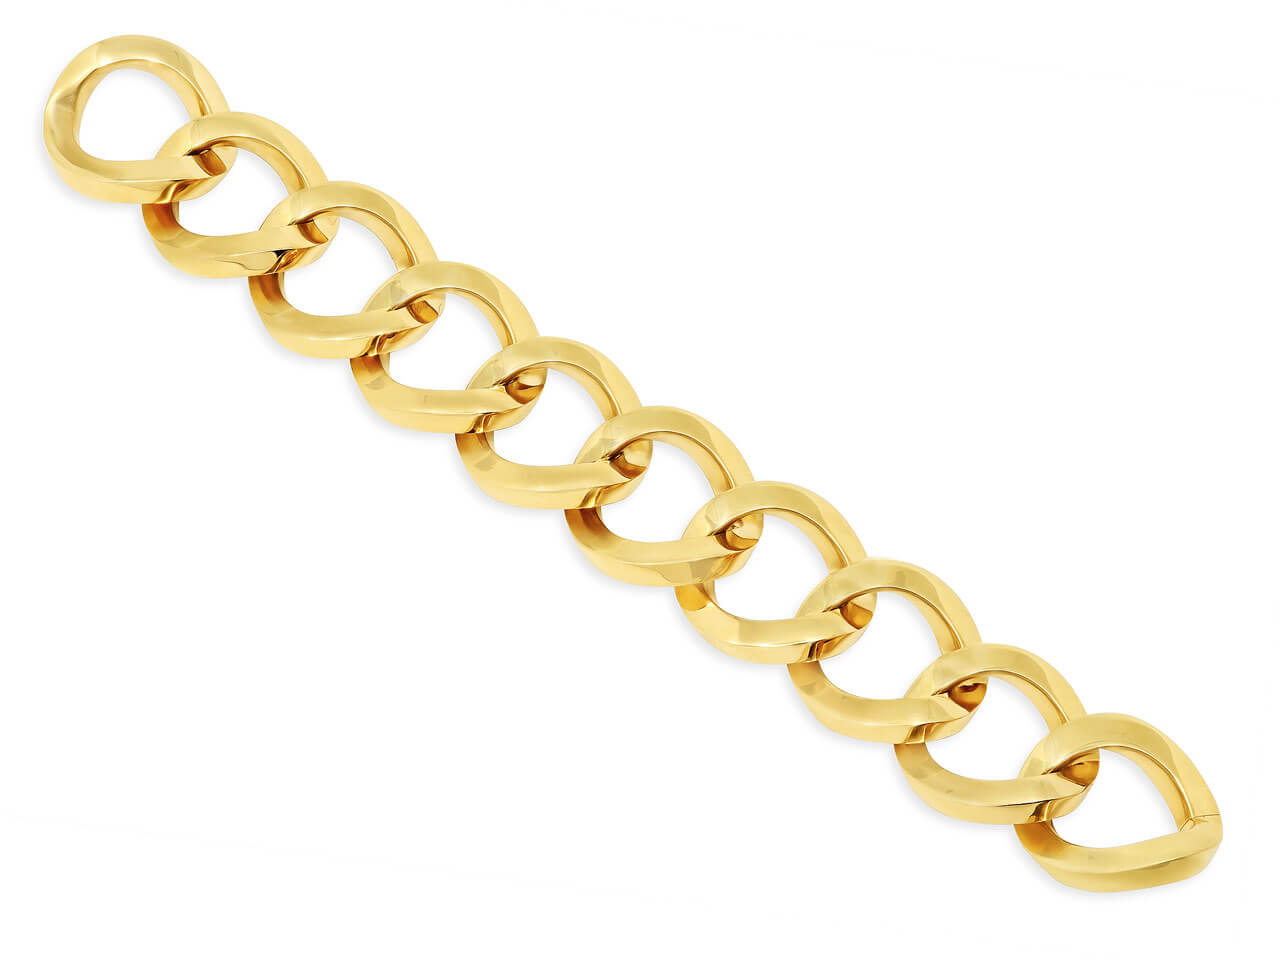 Italian Large Link Bracelet in 18K Gold, by Beladora